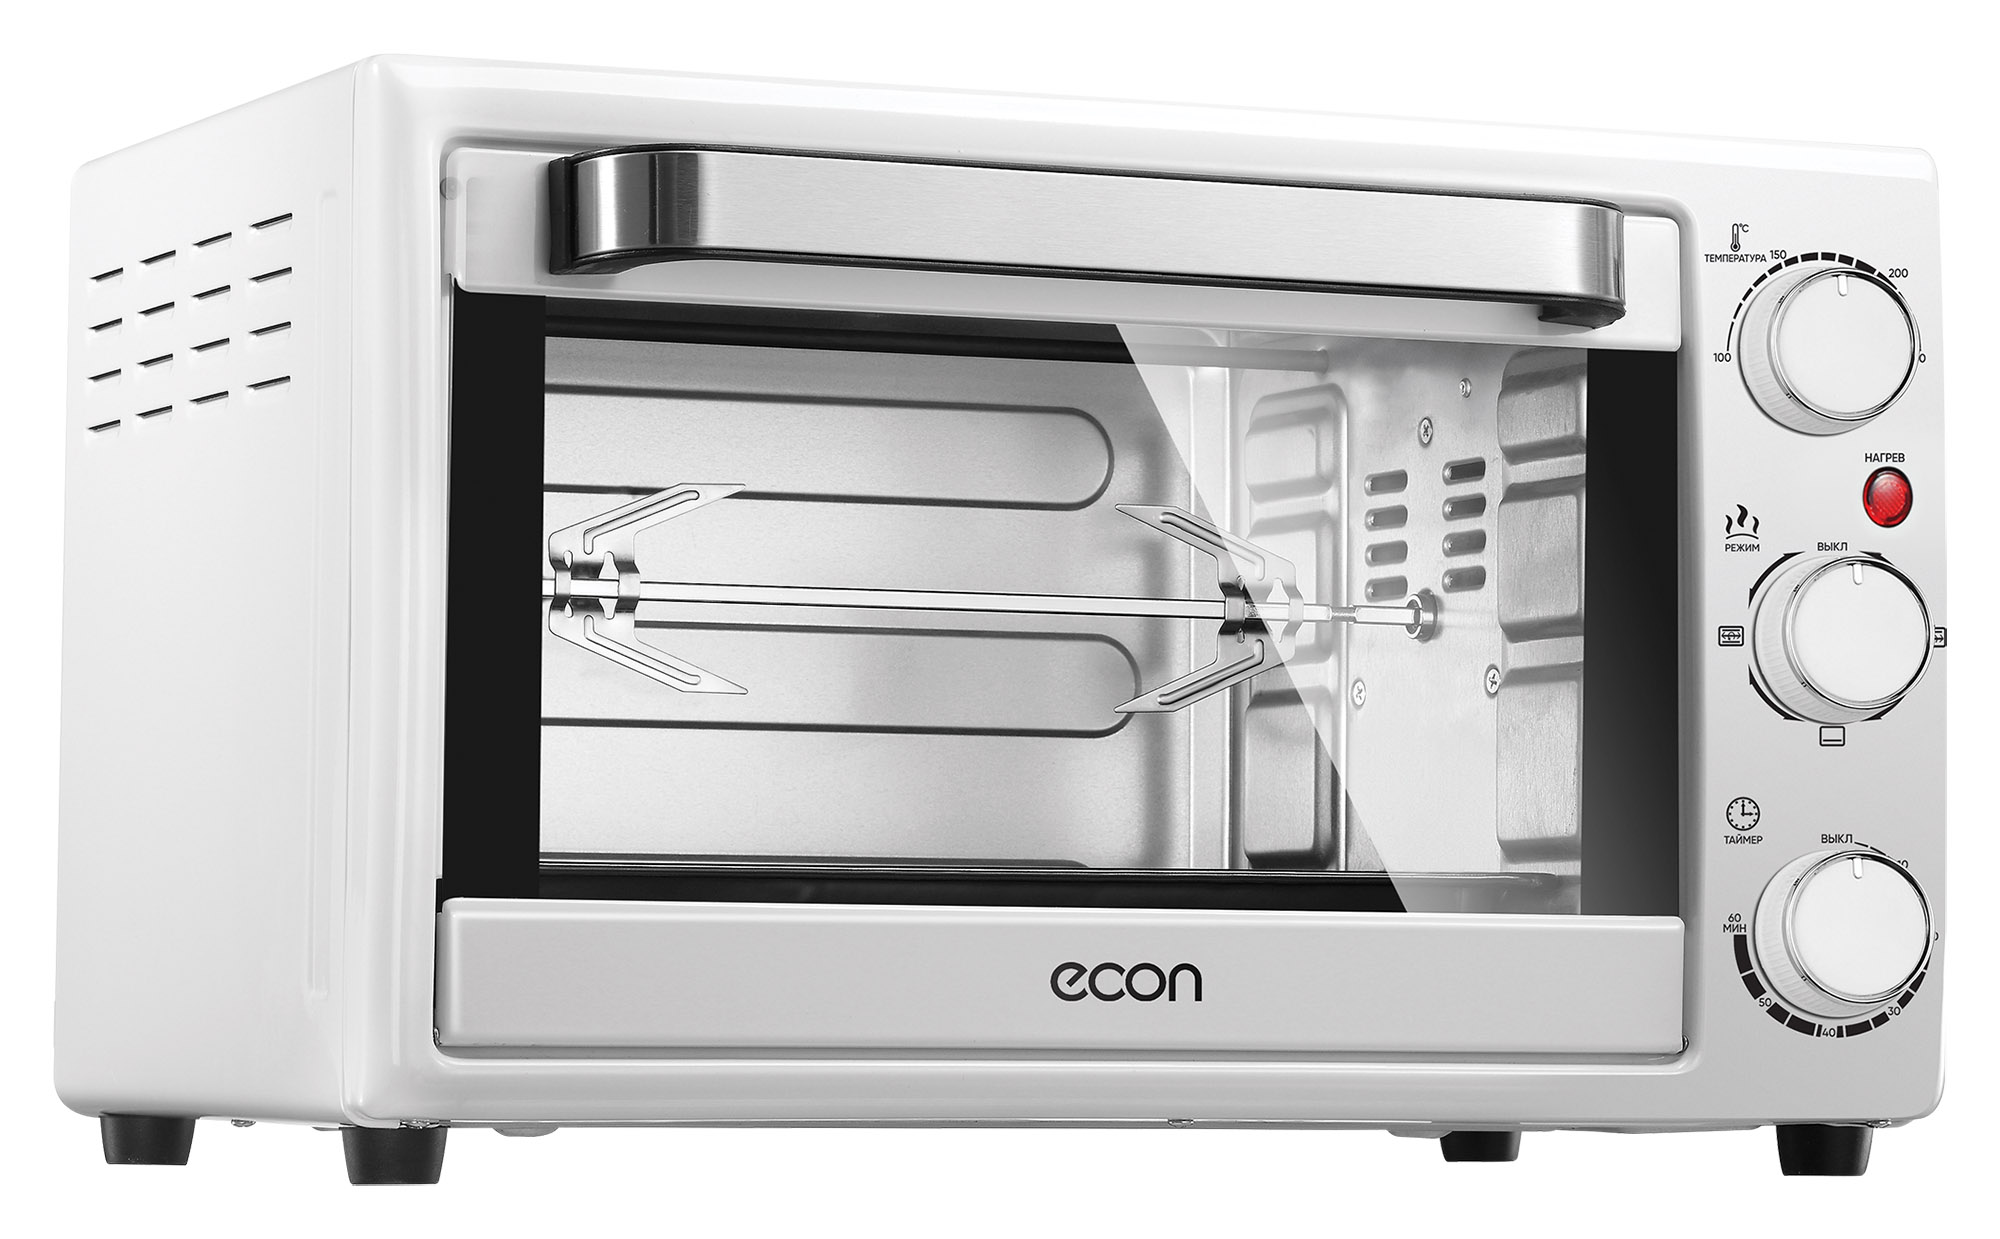 Картинка Мини-печь ECON ECO-G3301MO по разумной цене купить в интернет магазине mall.su